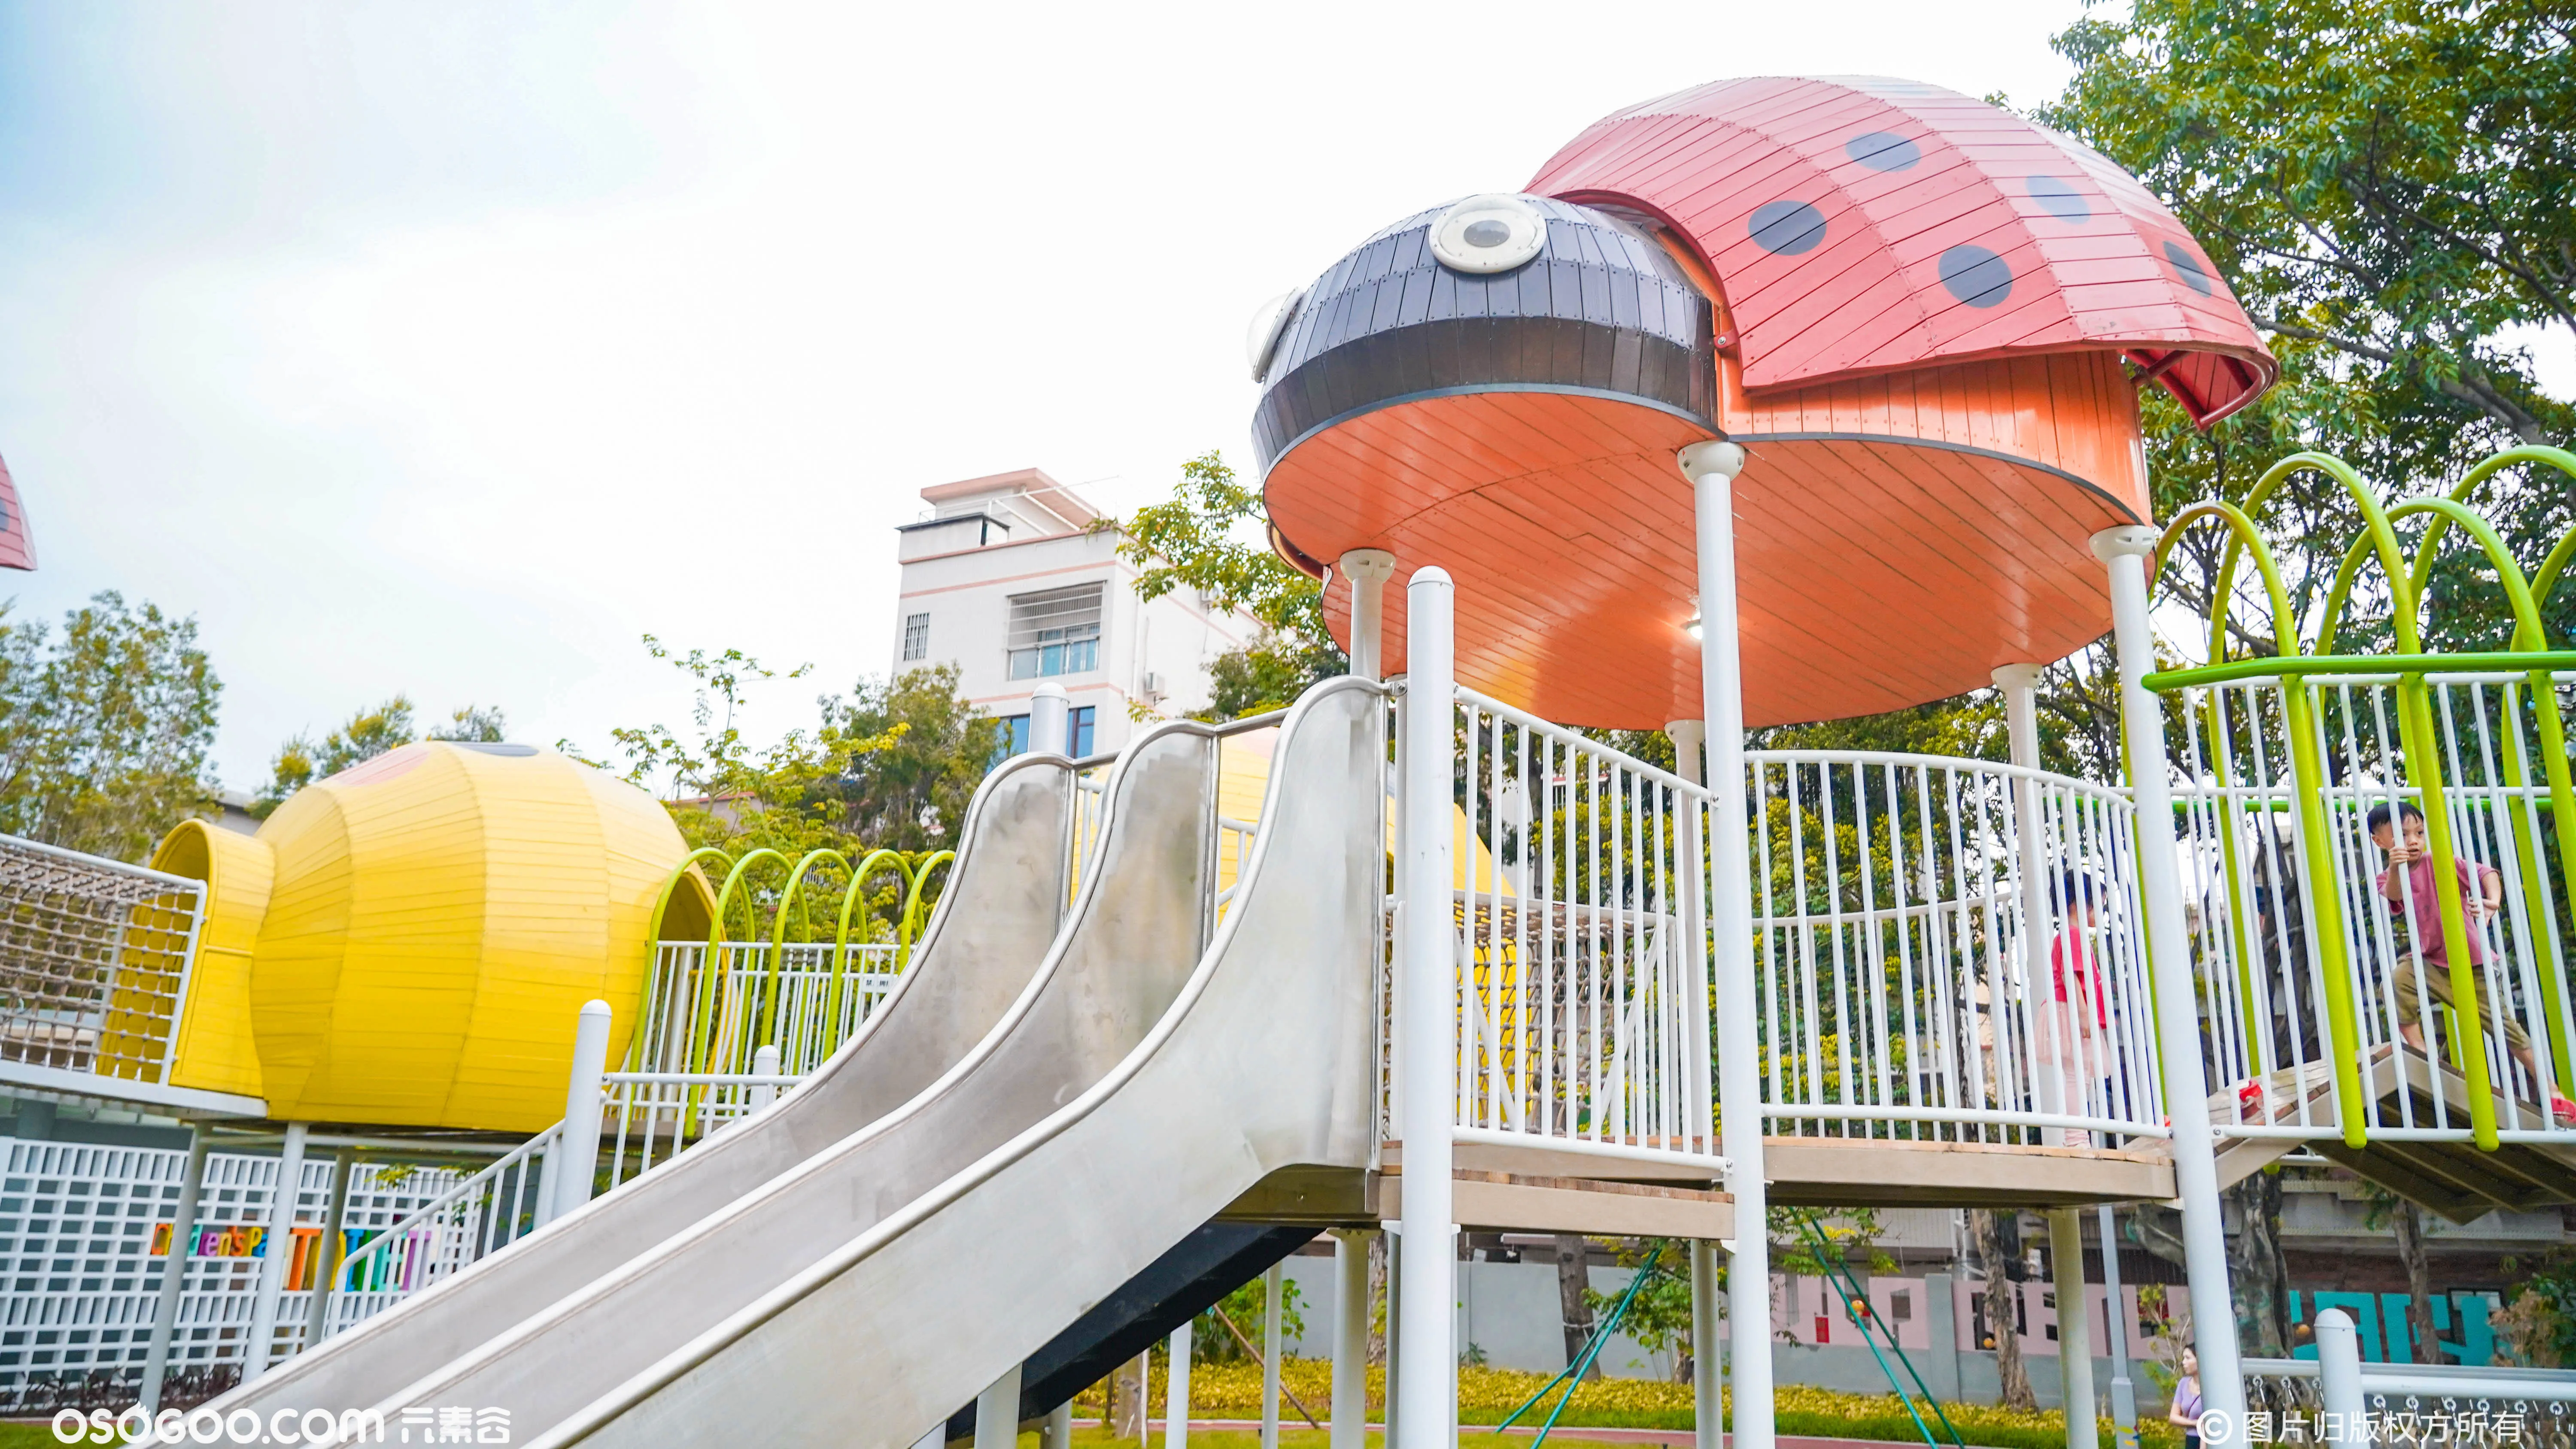 乘上七星瓢虫的翅膀，放飞浪漫想象：佛山桂城儿童公园游乐设计